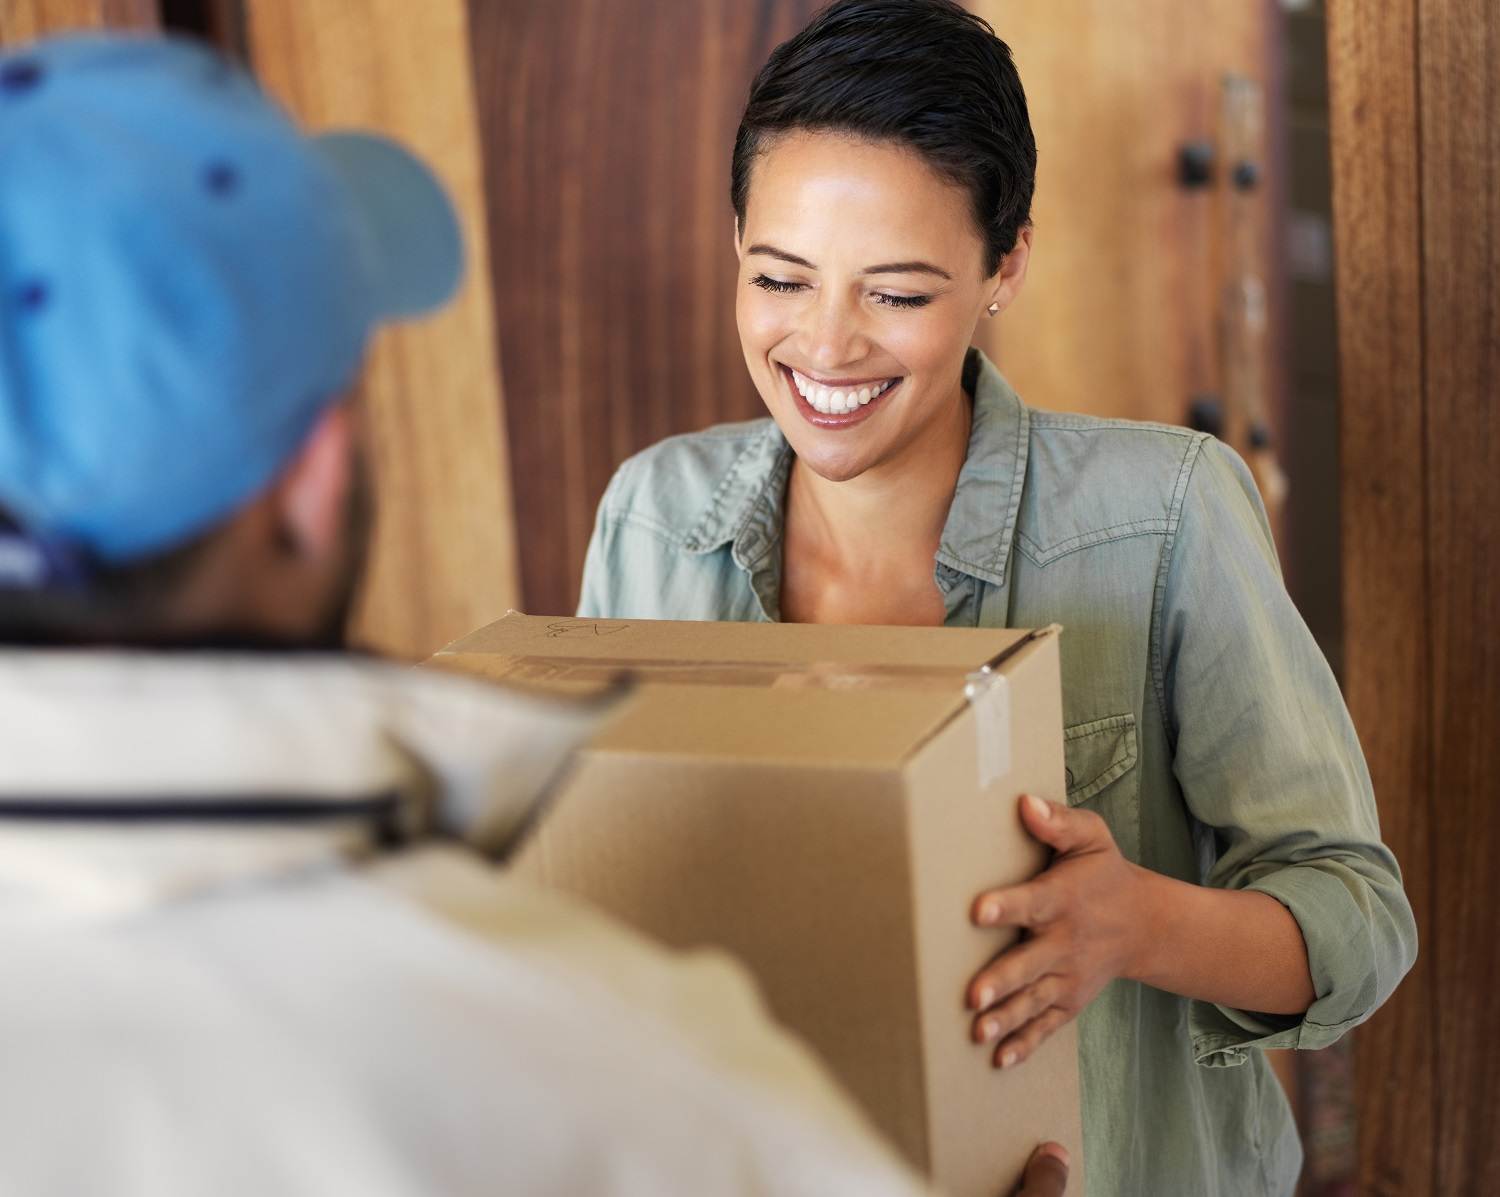 Lächelnde Frau bekommt Paket in Karton Verpackung an der Tür überreicht